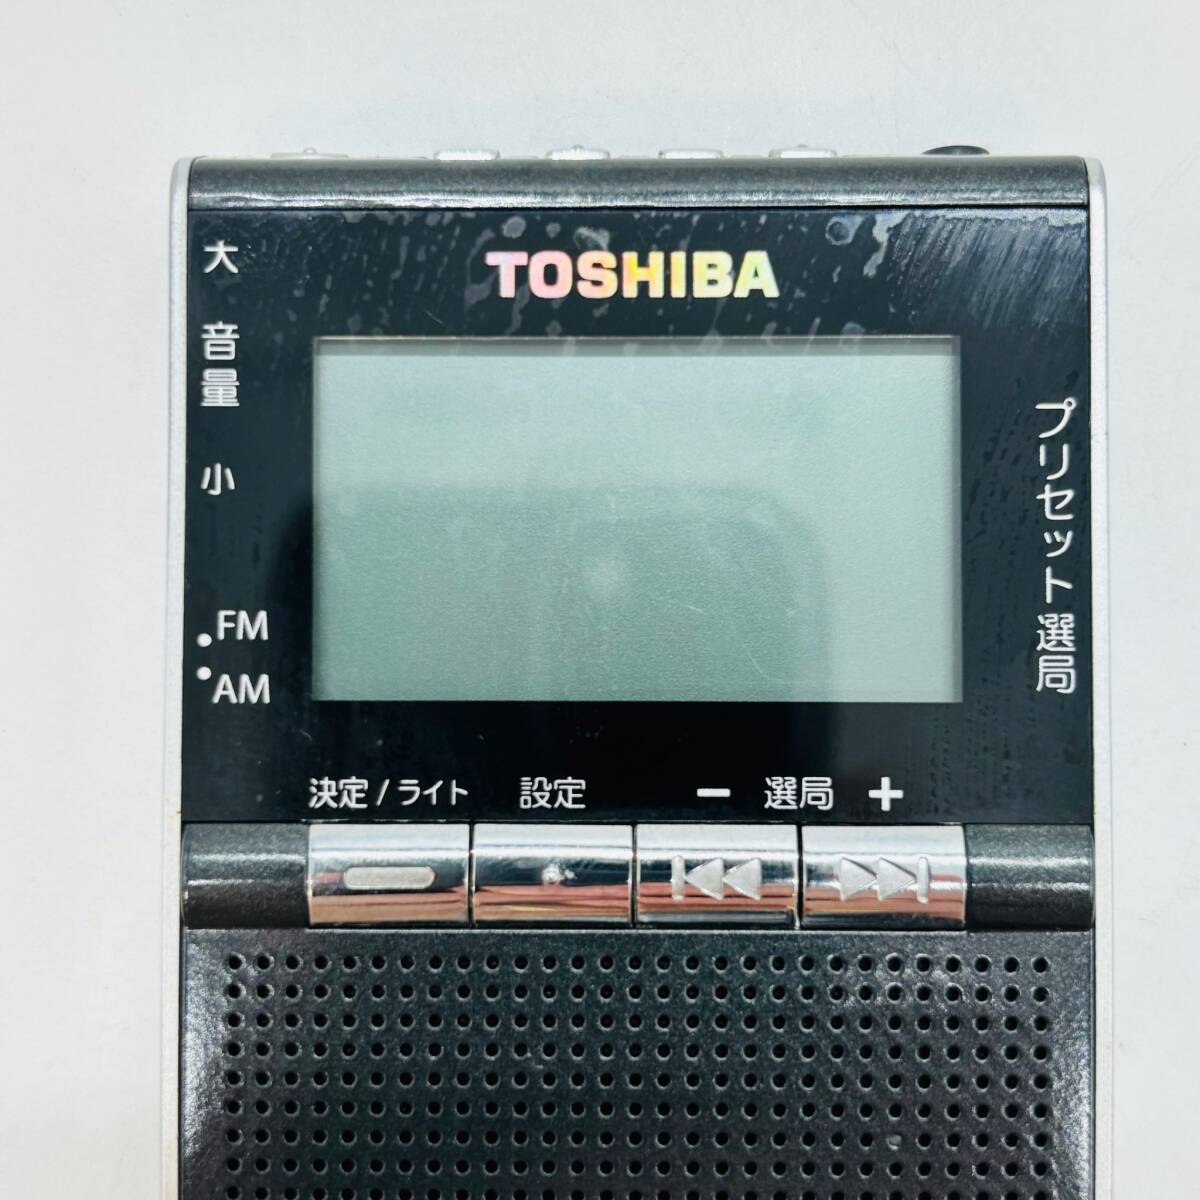 東芝 TOSHIBA FM STEREO / AM RADIO ポケット ラジオ TY-SPR5 1円 稼働 現状品 電池交換 必須 震災 対策 鞄 便利 ニュース 電池式 6722_画像7